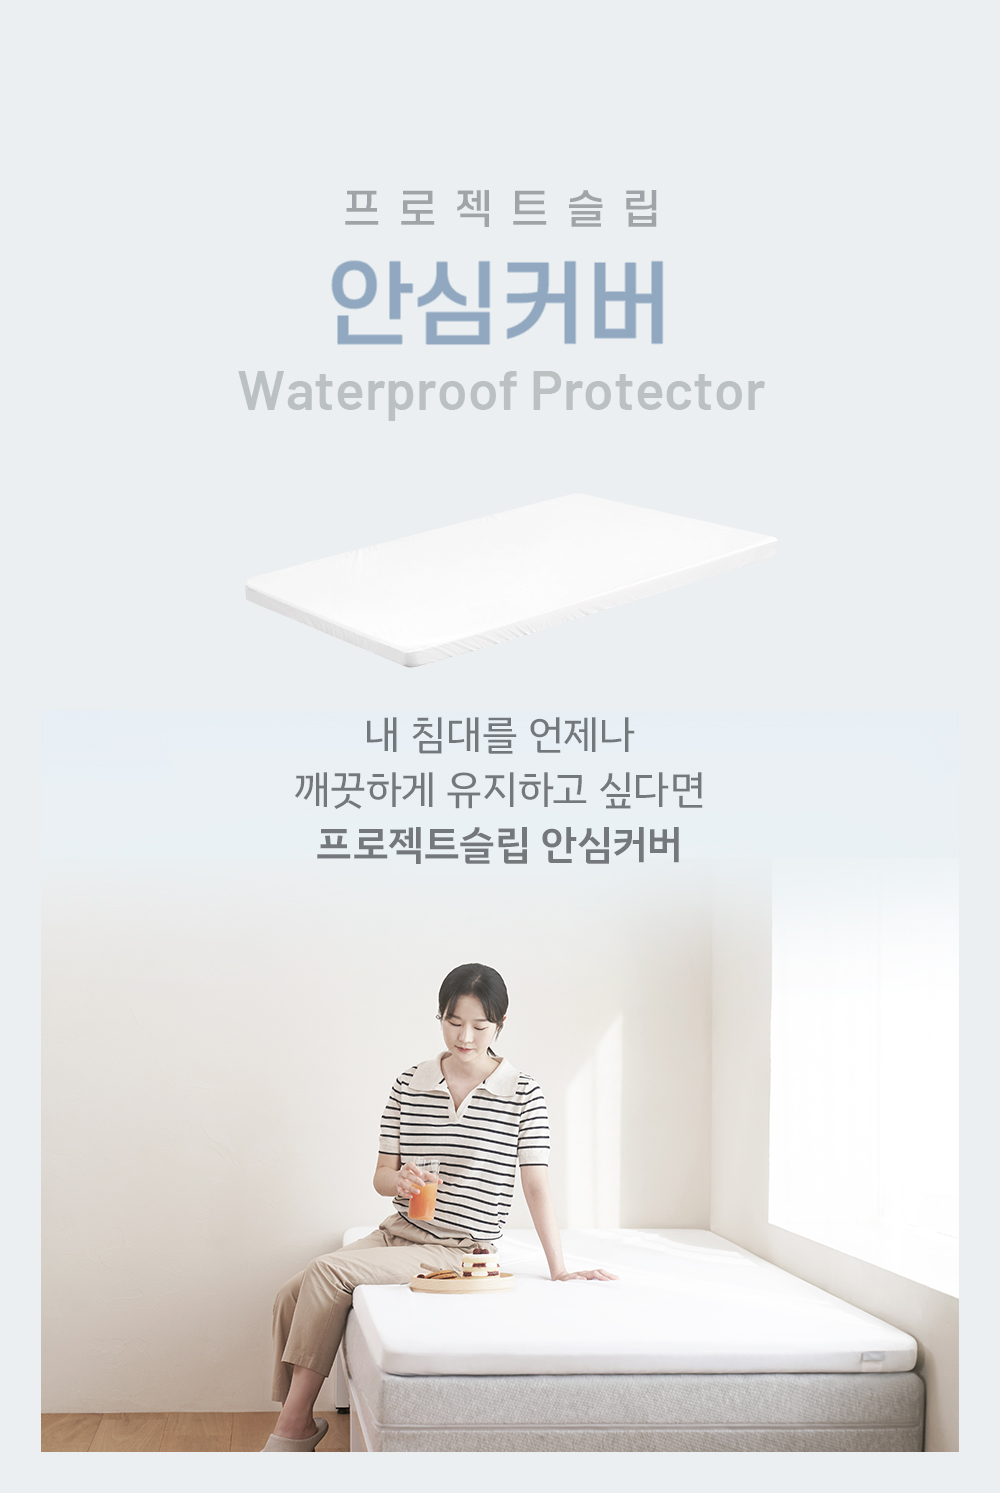 211027_PS_waterproofprotector_detailpage_1_155748.jpg